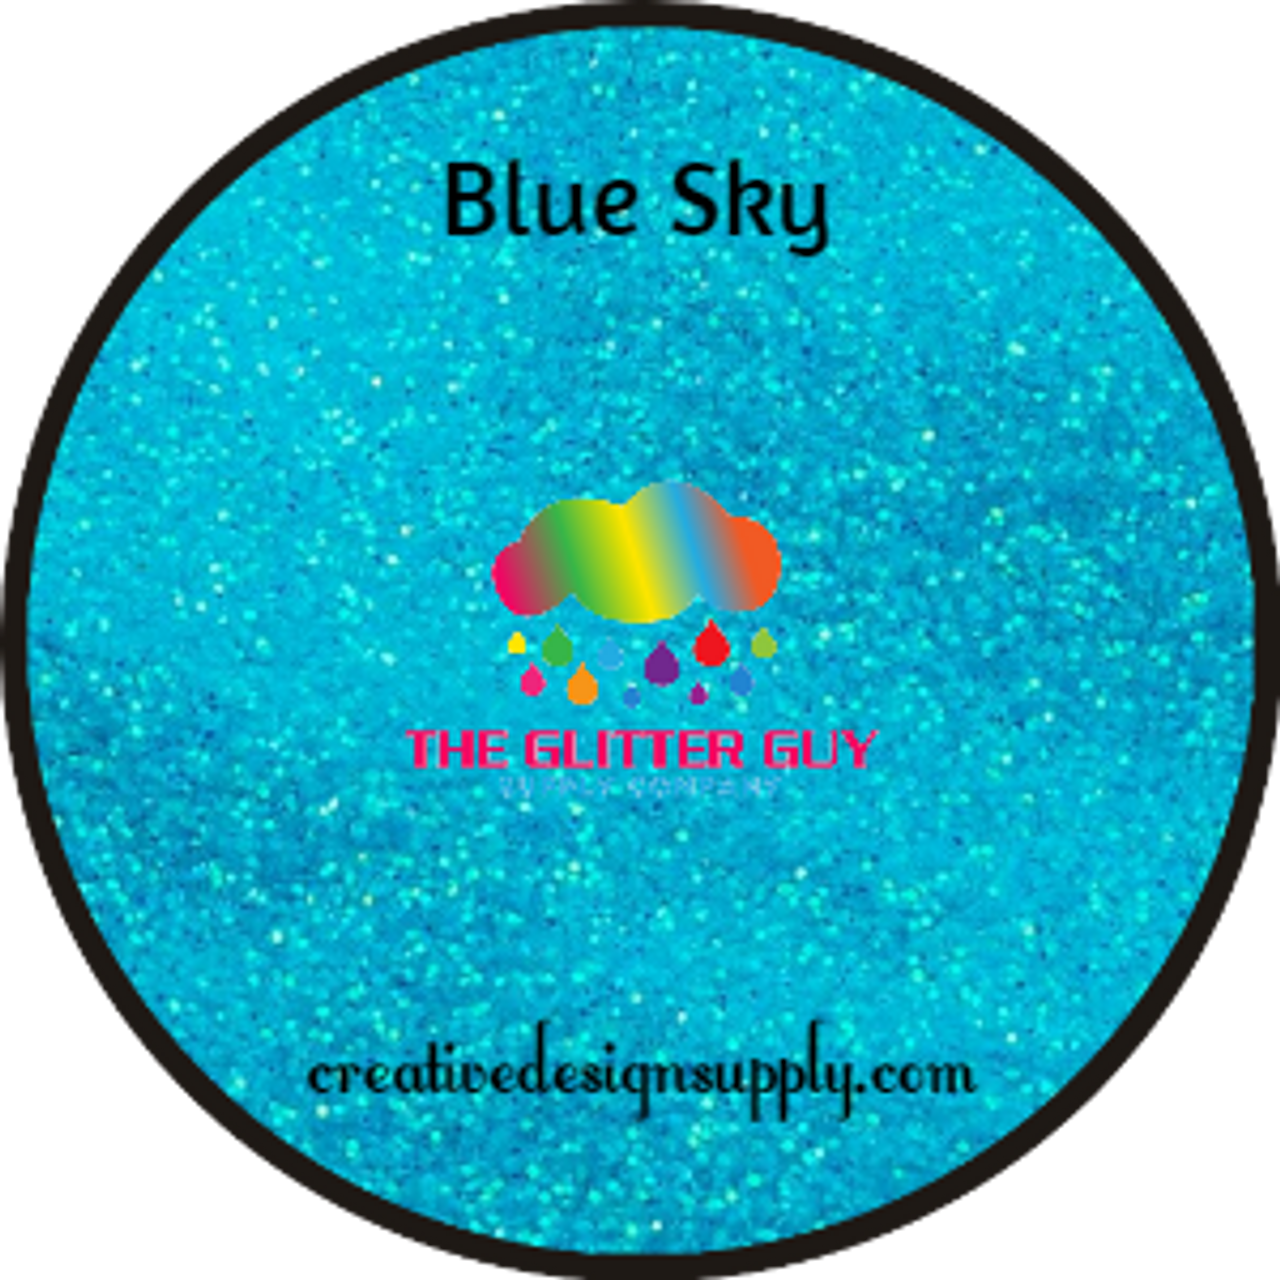 The Glitter Guy | Blue Sky